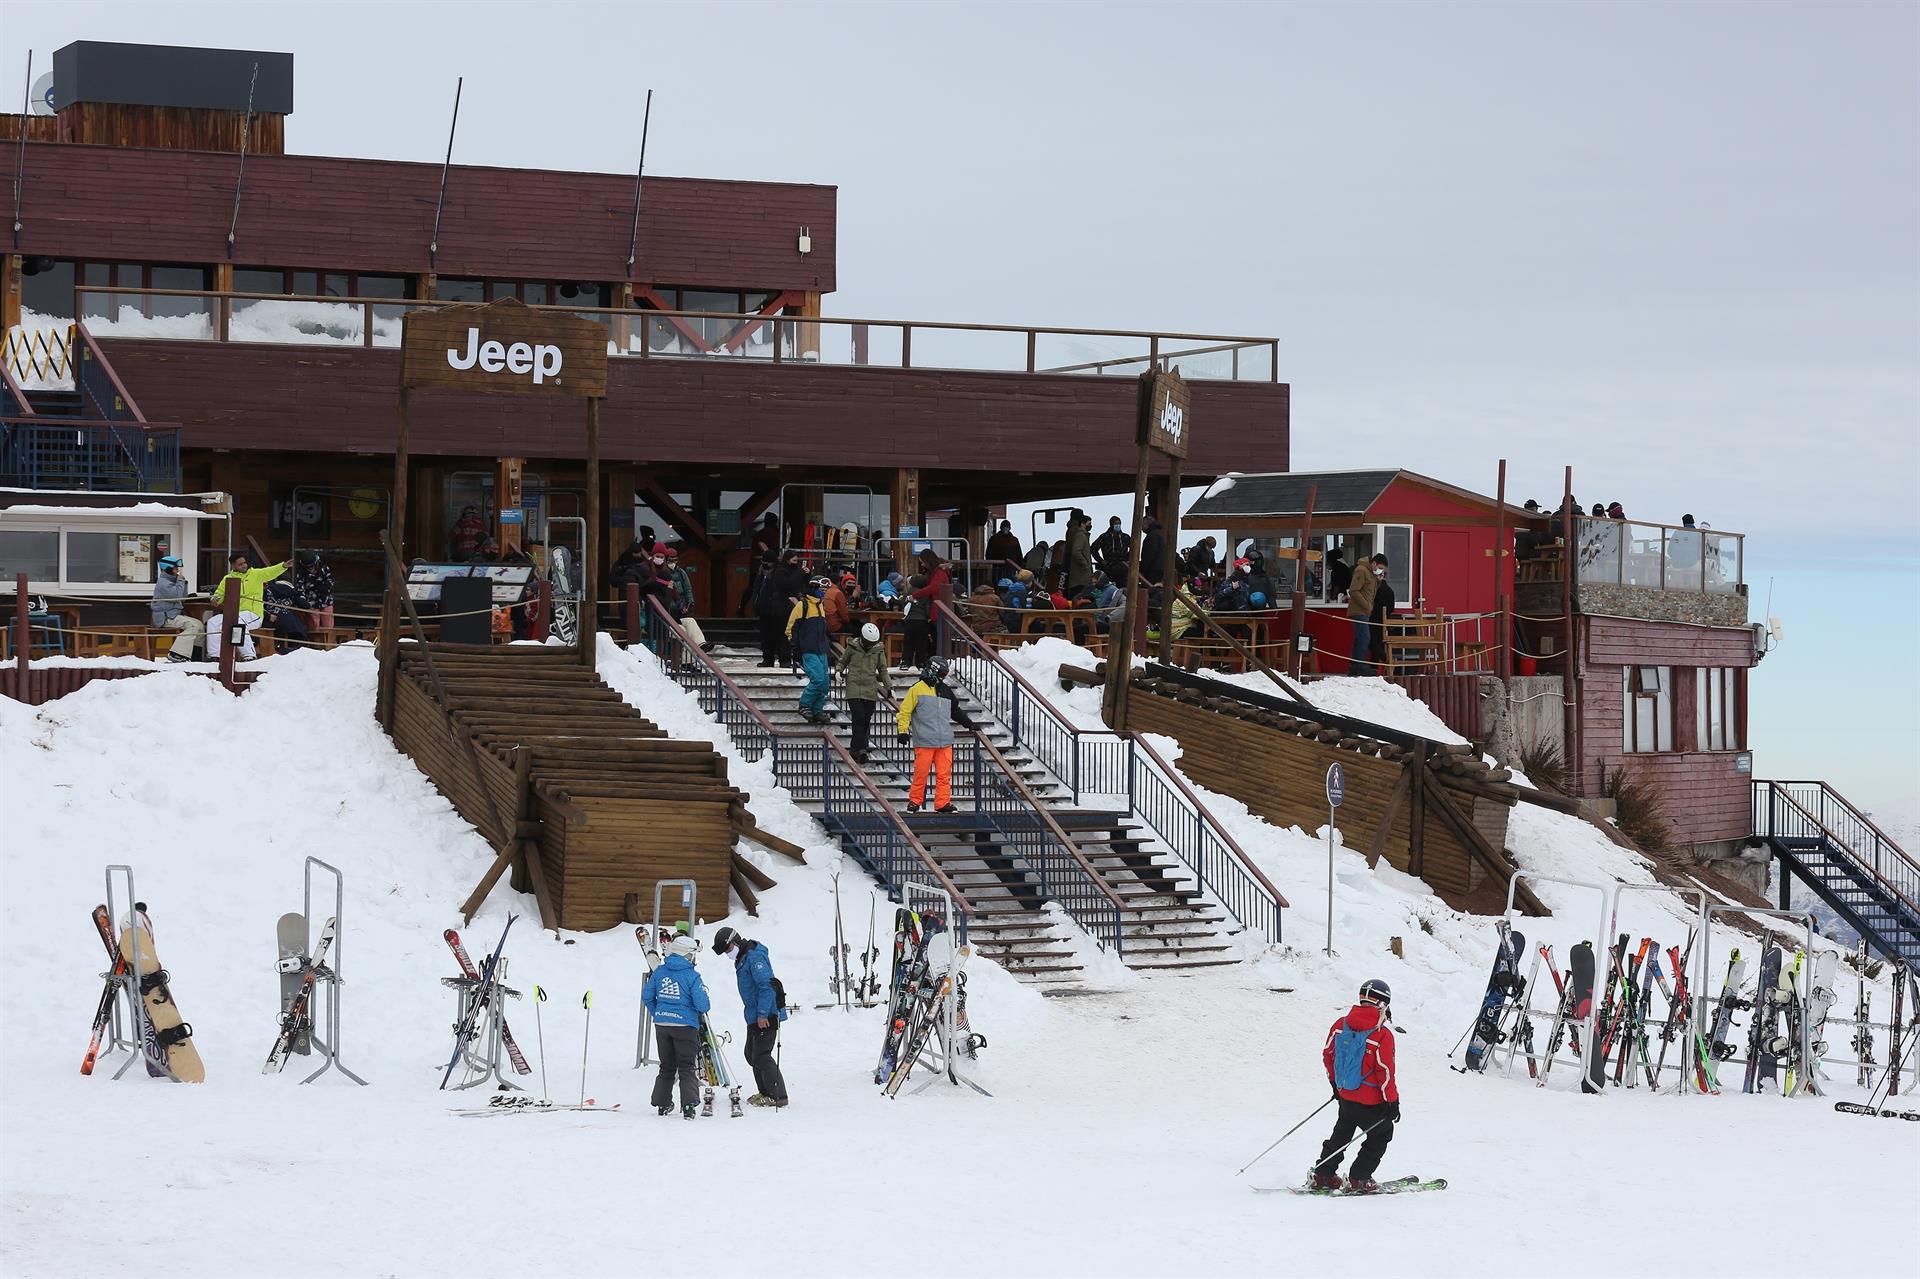 Este es el centro de Ski, en las montañas cercanas a Santiago de Chile. 